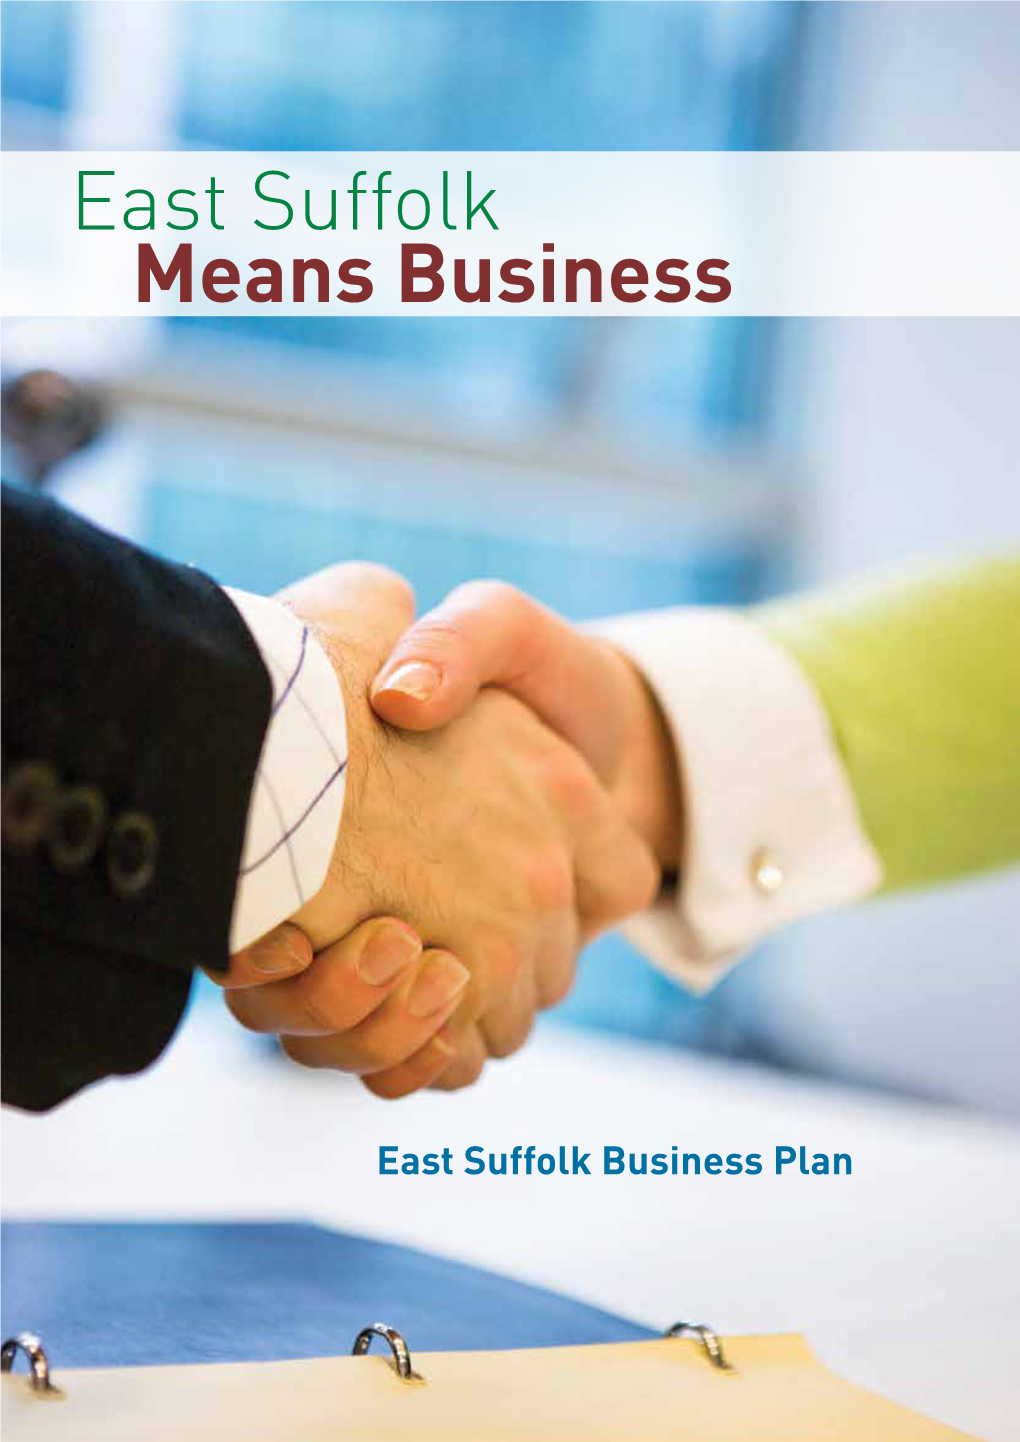 East Suffolk Business Plan